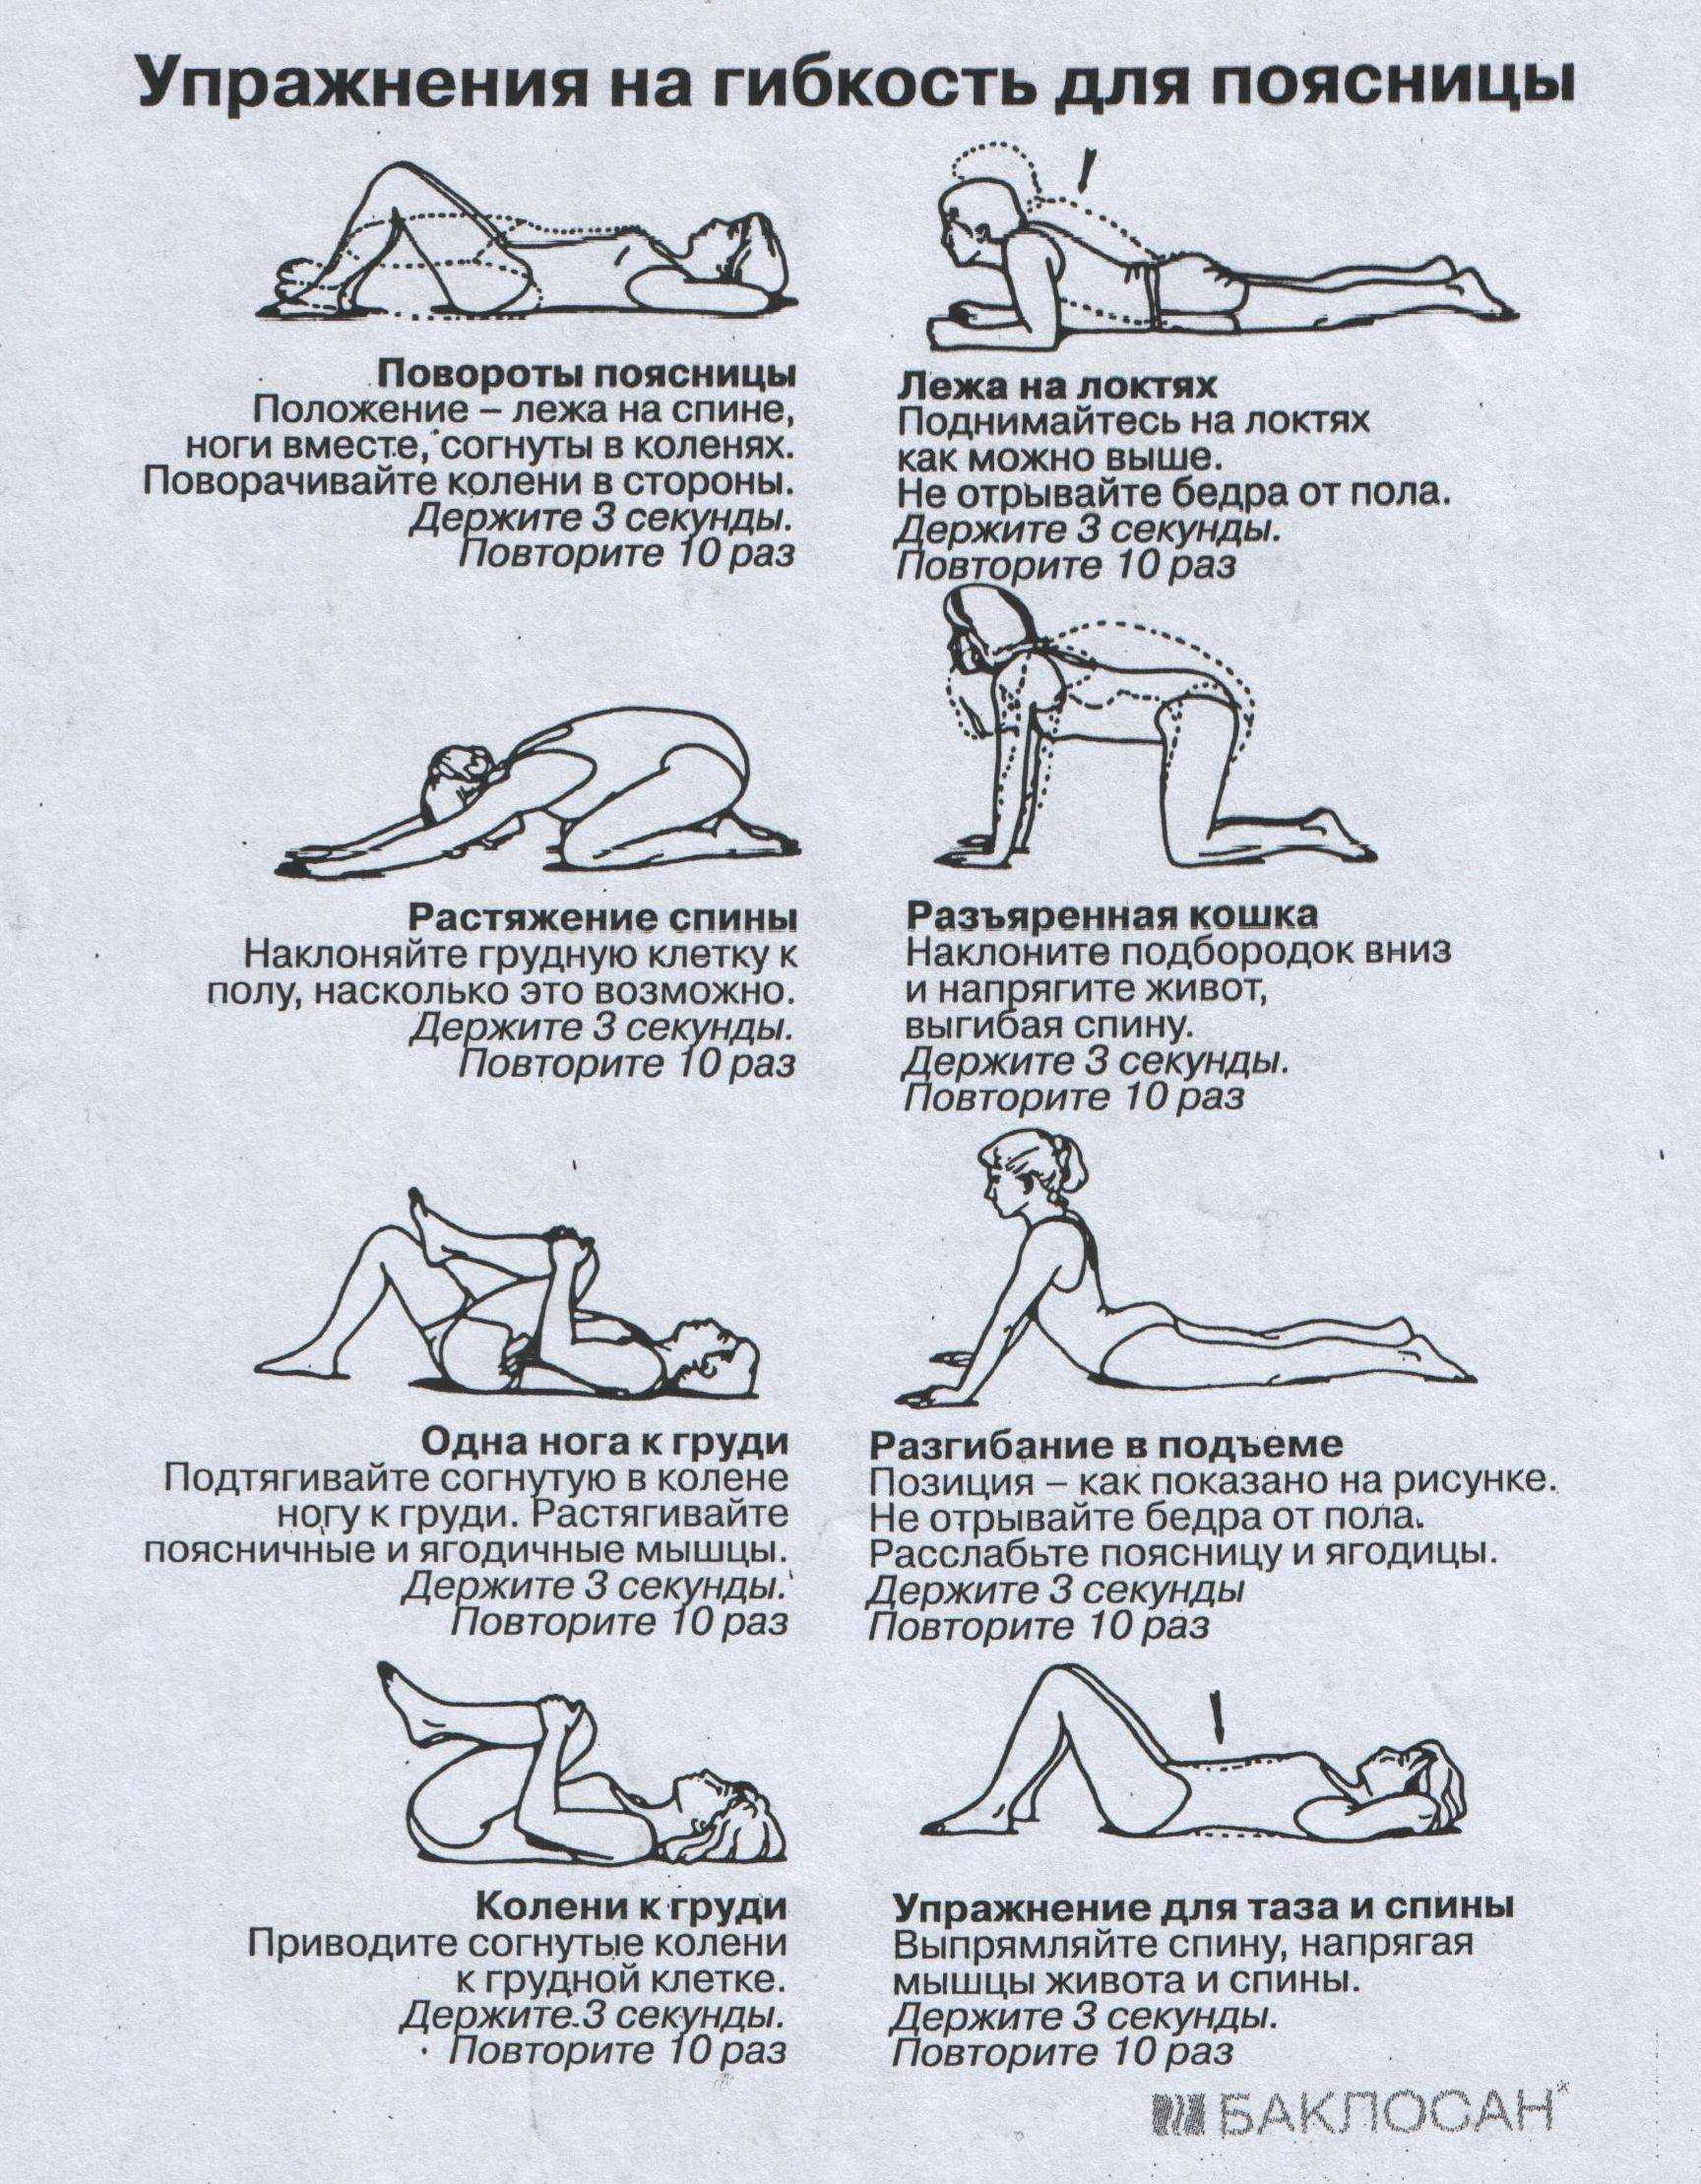 С этими упражнениями ваша спина станет не только сильной, но и здоровой, что очень важно для любого человека